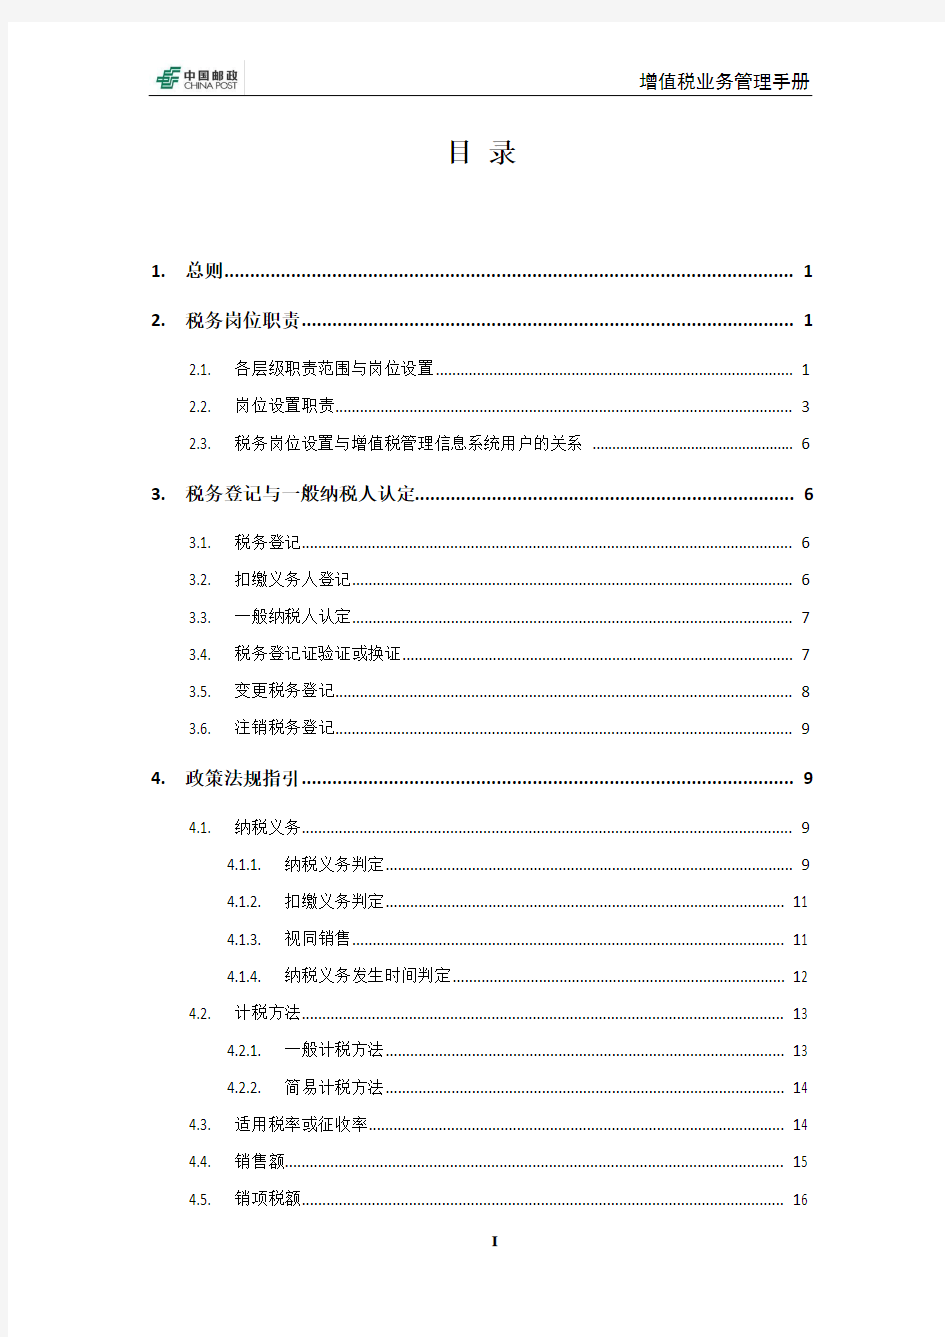 中国邮政集团增值税业务手册(试行)